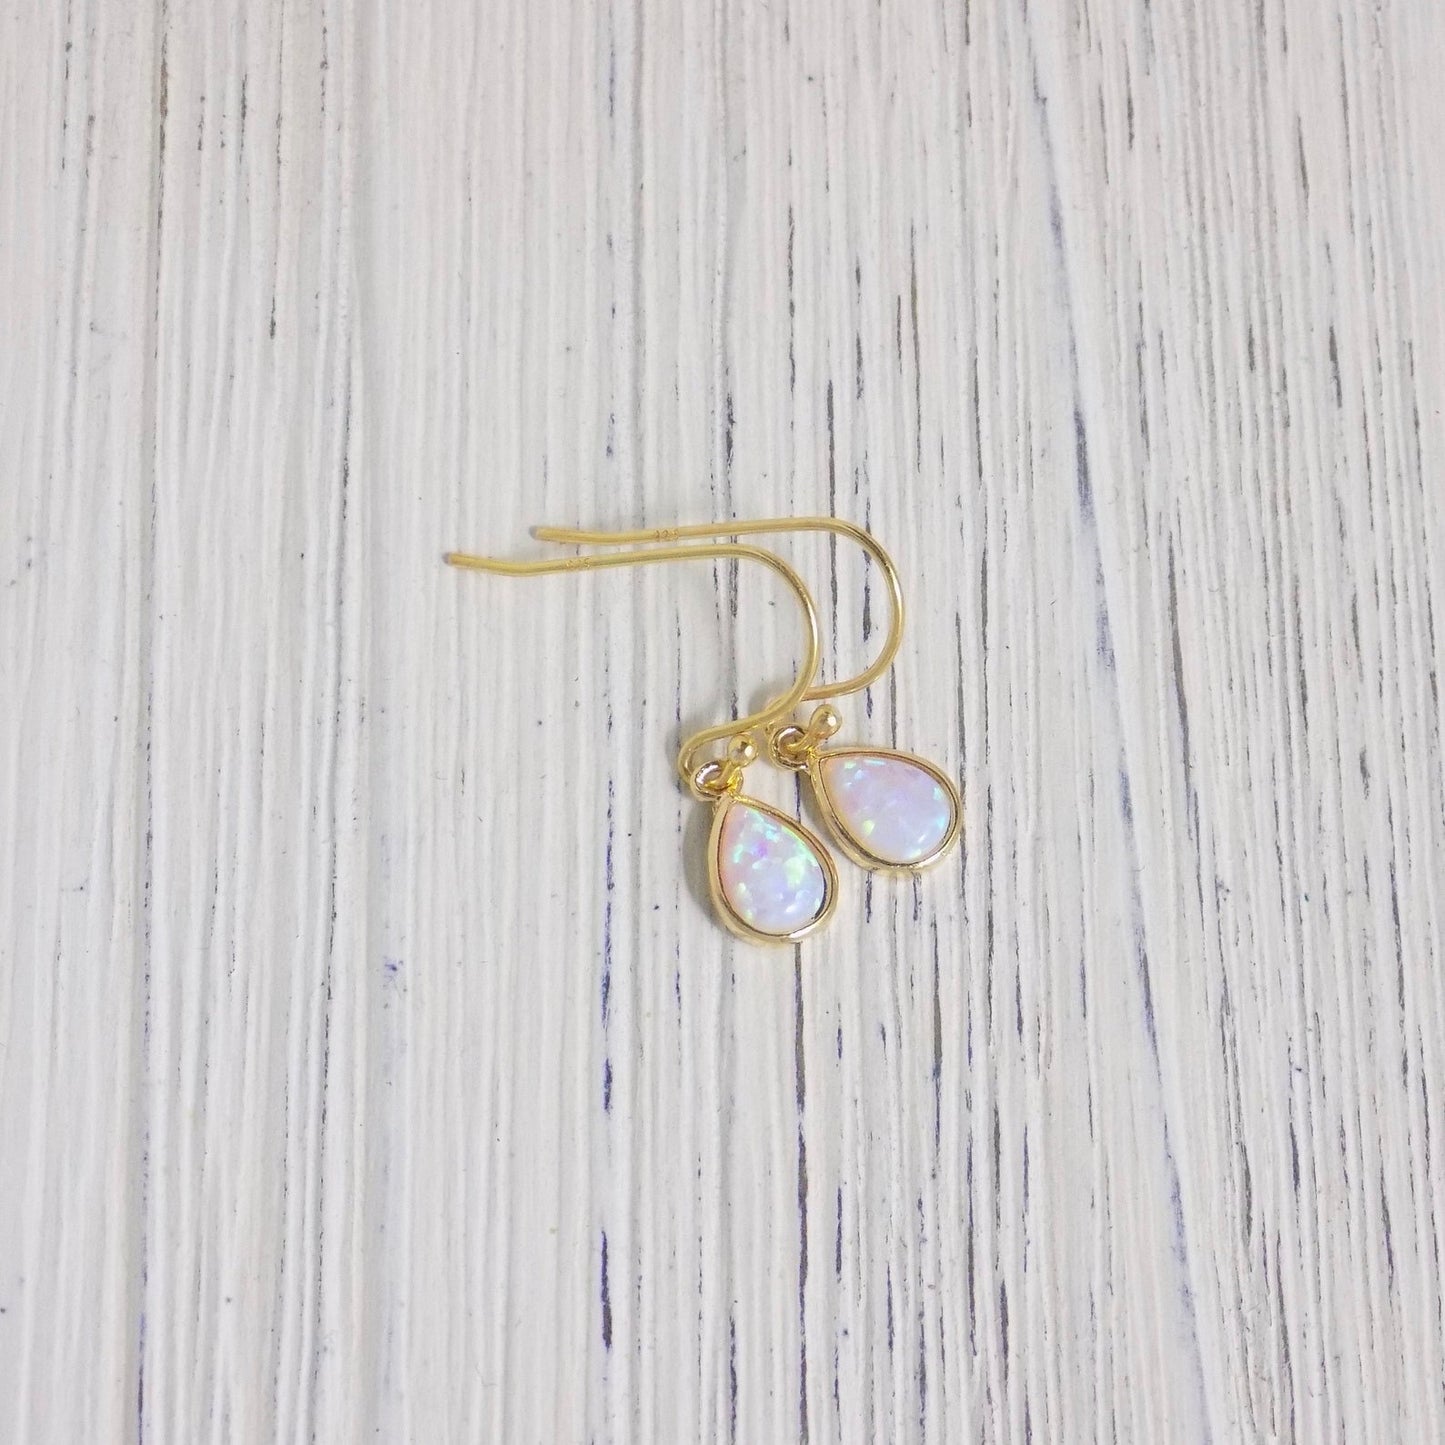 Gold Opal Earrings - Tiny Drop Opal Earring